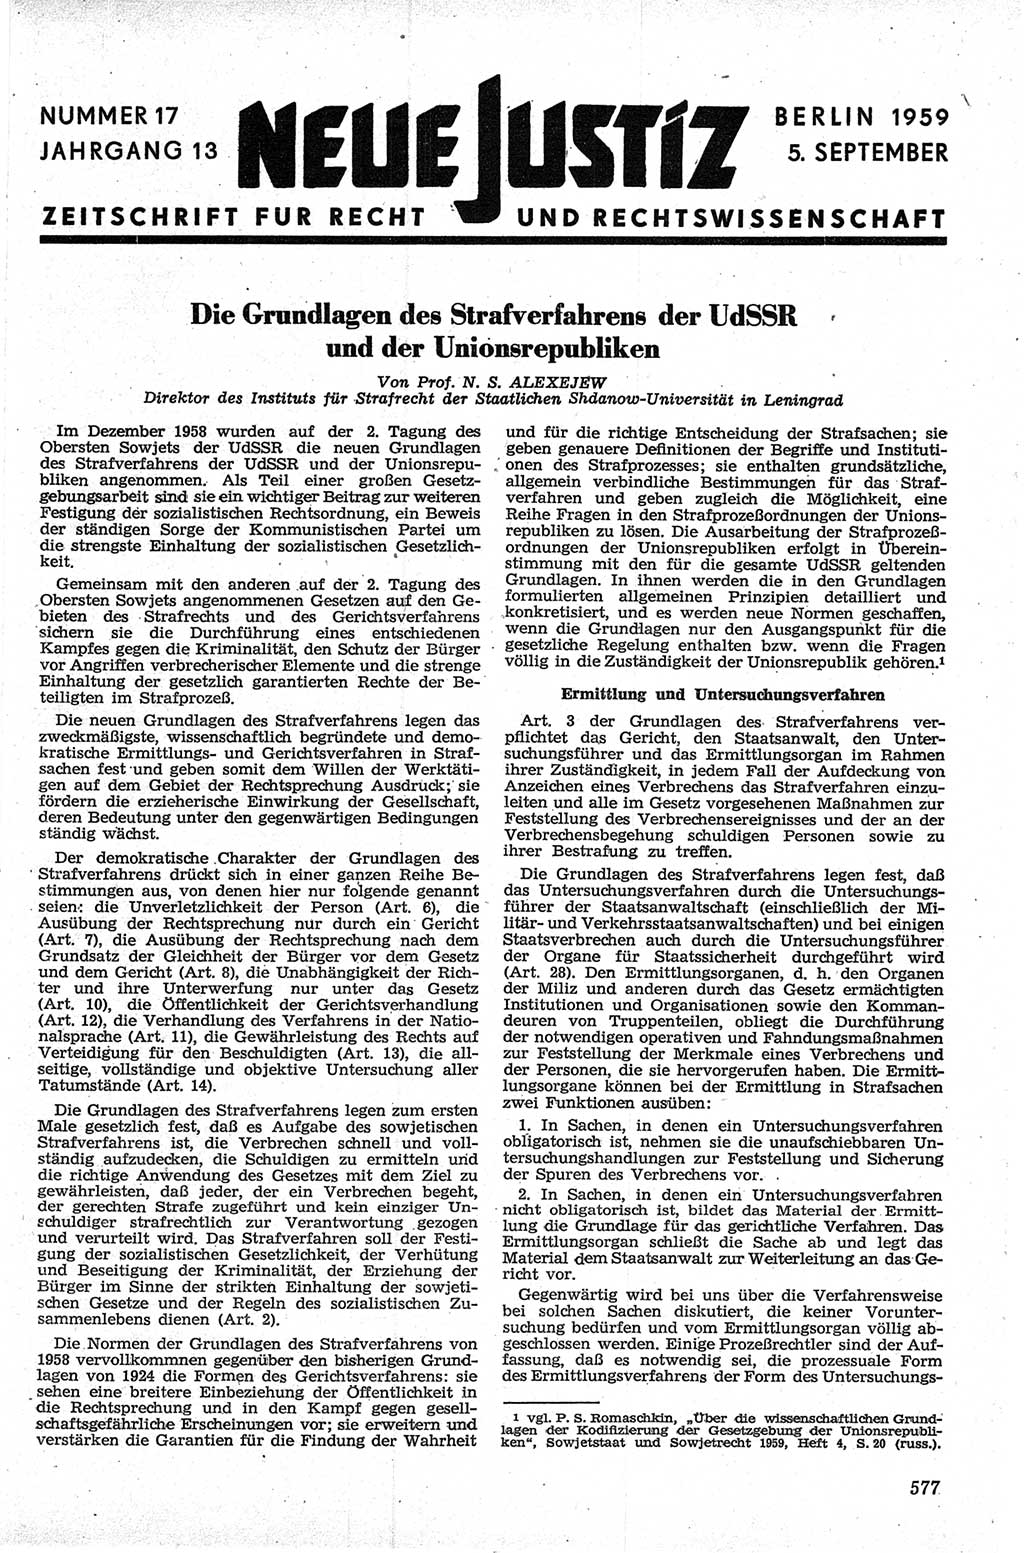 Neue Justiz (NJ), Zeitschrift für Recht und Rechtswissenschaft [Deutsche Demokratische Republik (DDR)], 13. Jahrgang 1959, Seite 577 (NJ DDR 1959, S. 577)